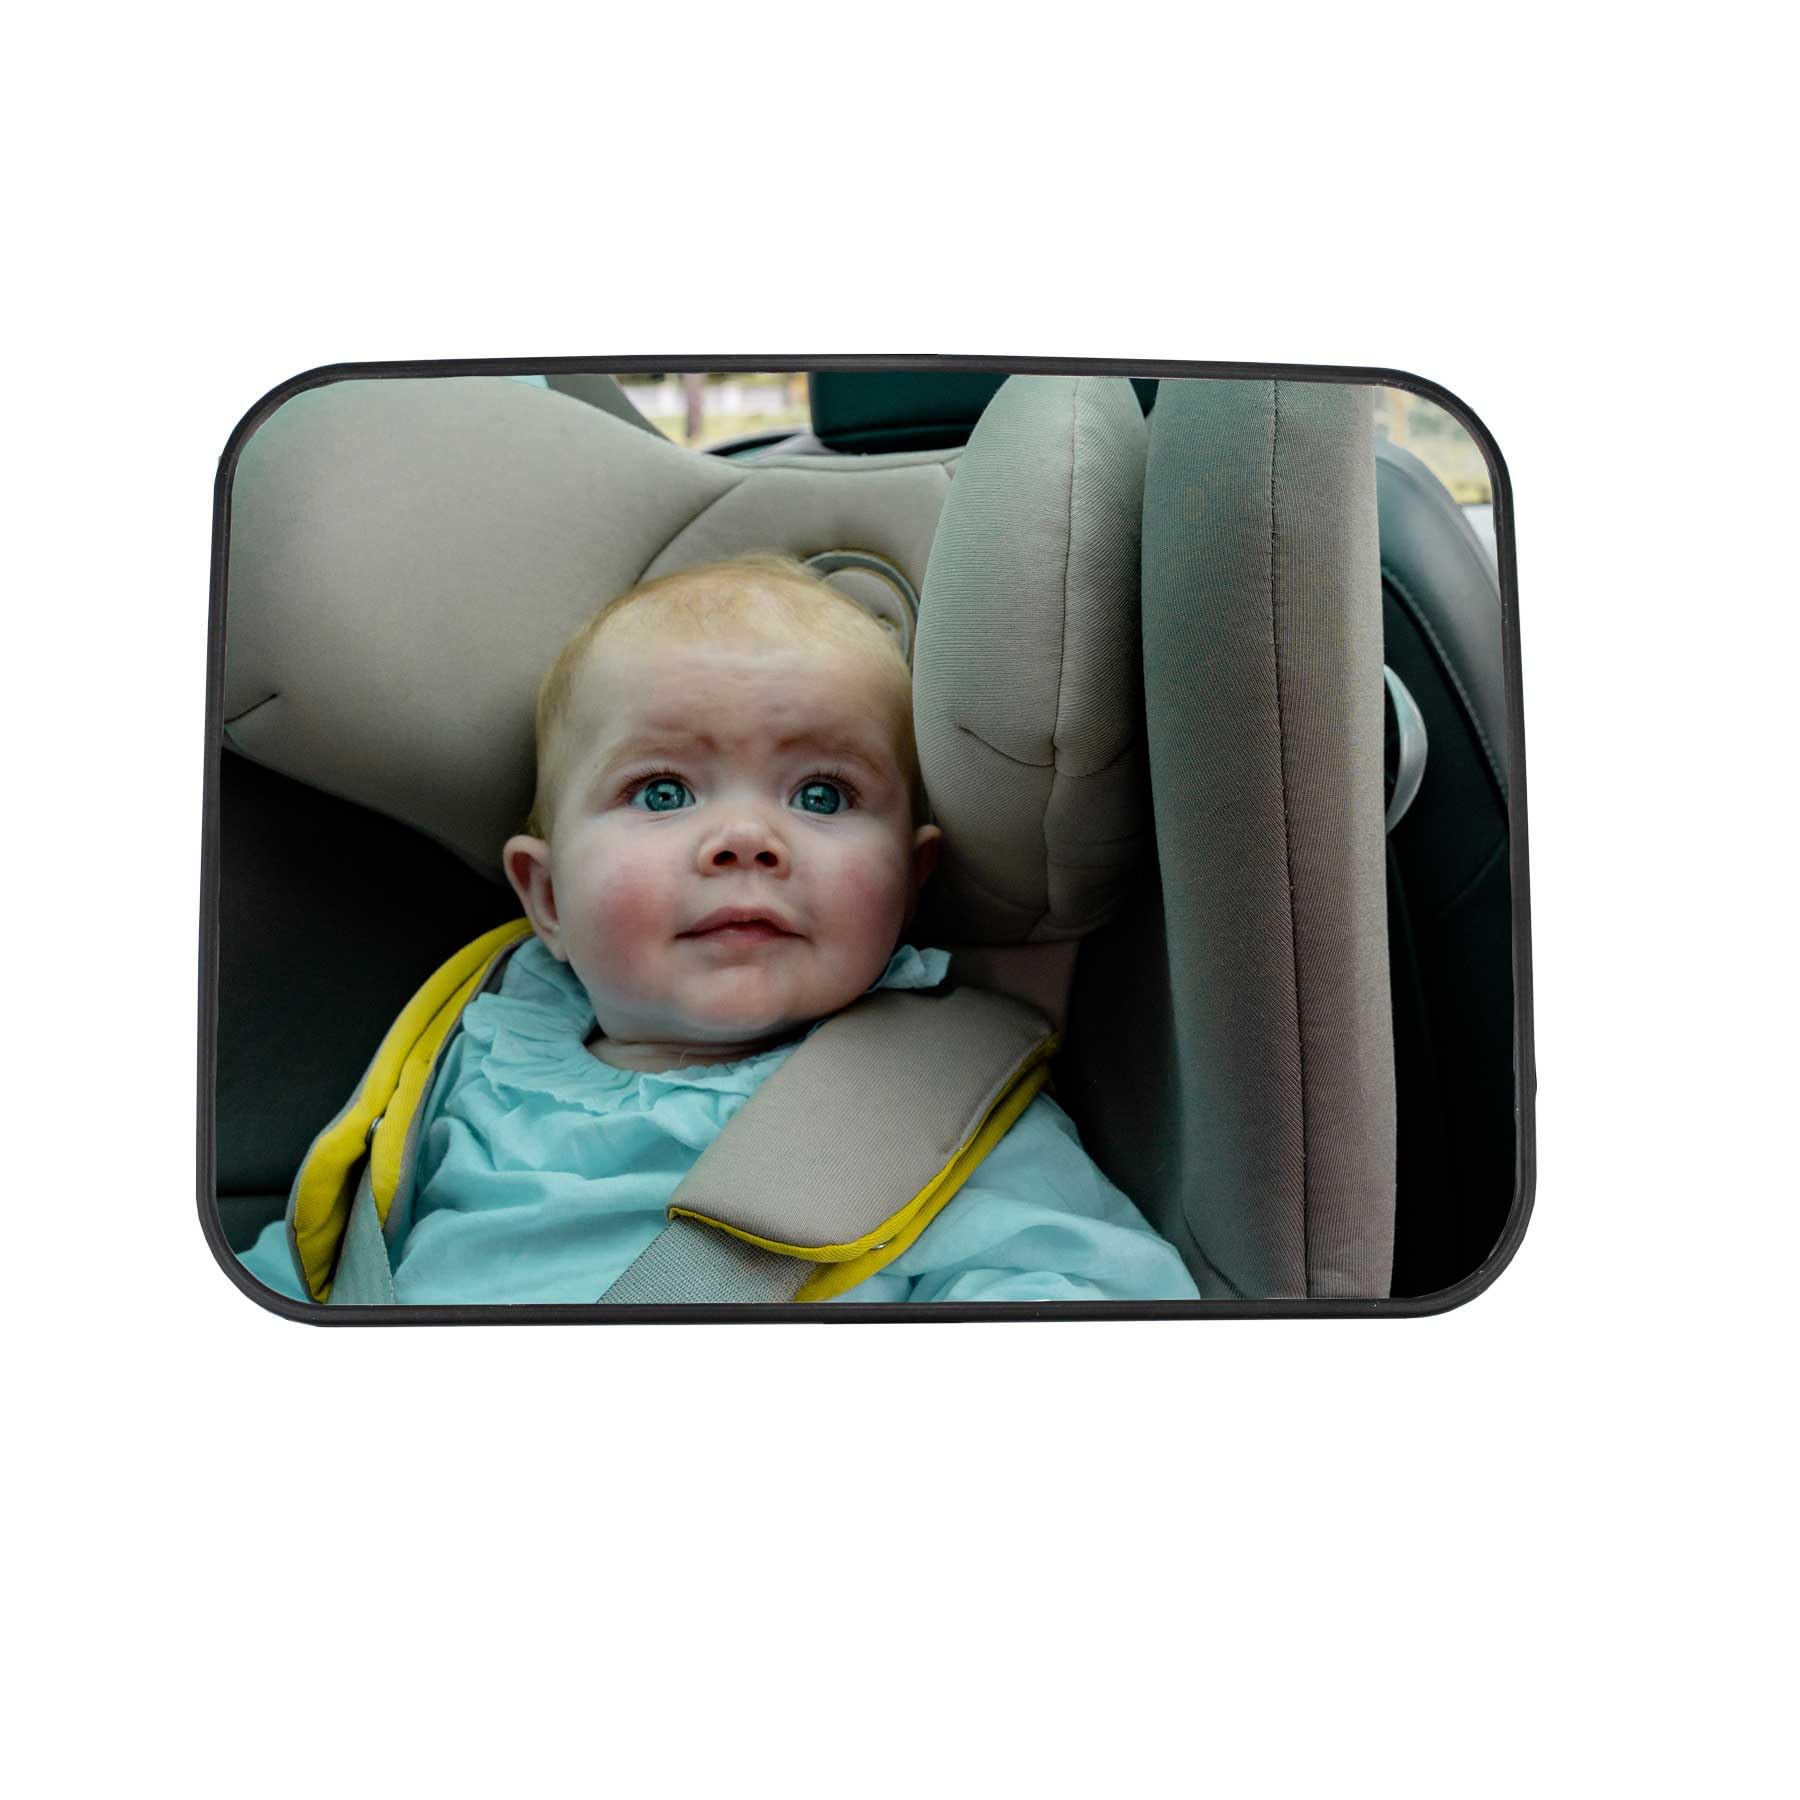 EZIMOOV Baby-Autospiegel Rücksitz - Rückspiegel Rückwärts gerichteter Autositz, um Ihr Kind sicher zu sehen - Recycelter Kunststoff :Recyceltes Material und Verpackung - Großansicht und Nettoansicht von EZIMOOV